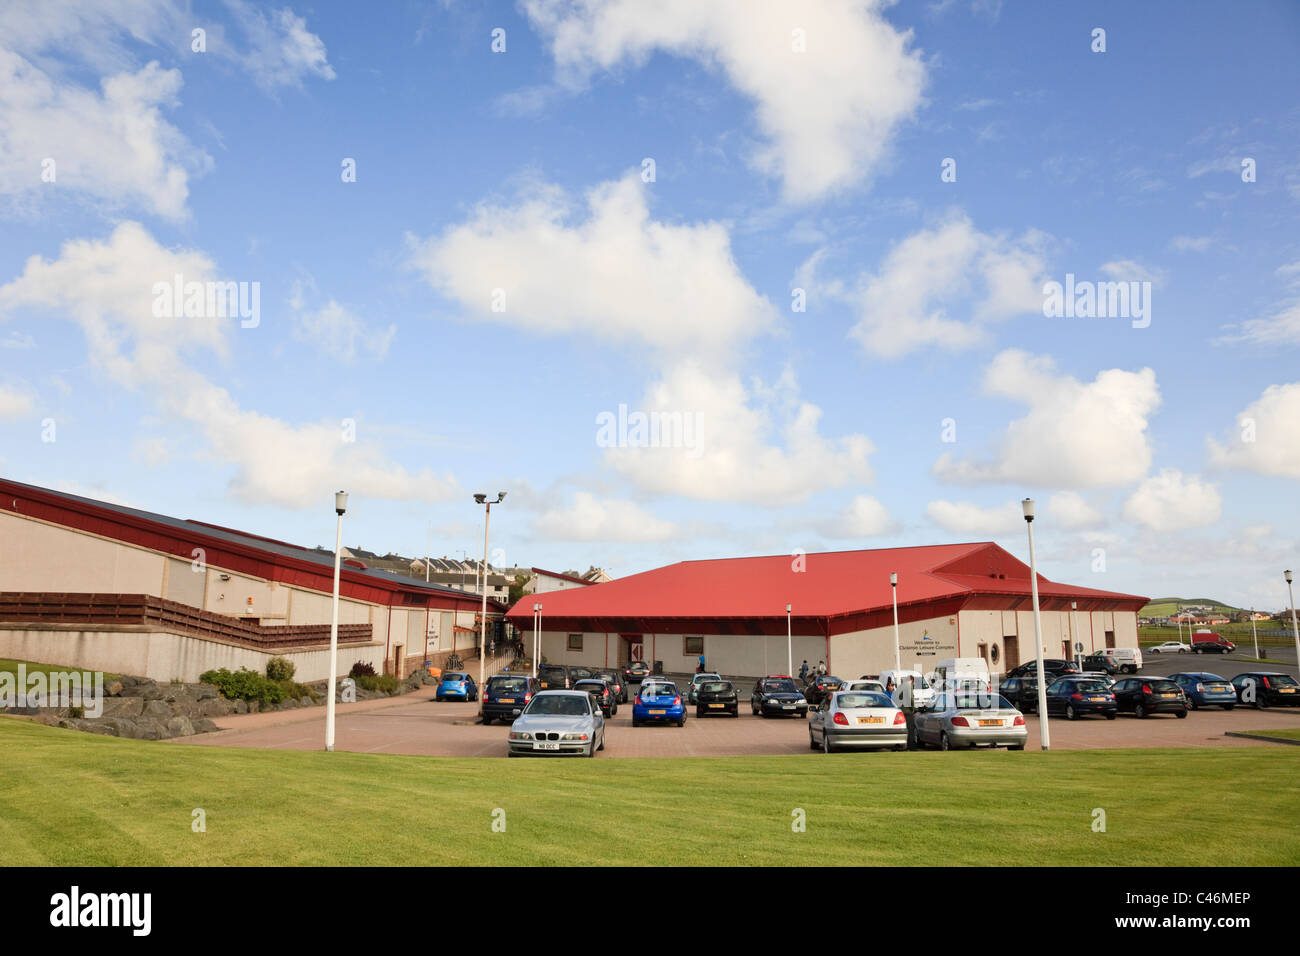 Nouveau complexe de loisirs Clickimin sports center building à Lerwick, Shetland, Scotland, UK, Grande-Bretagne. Banque D'Images